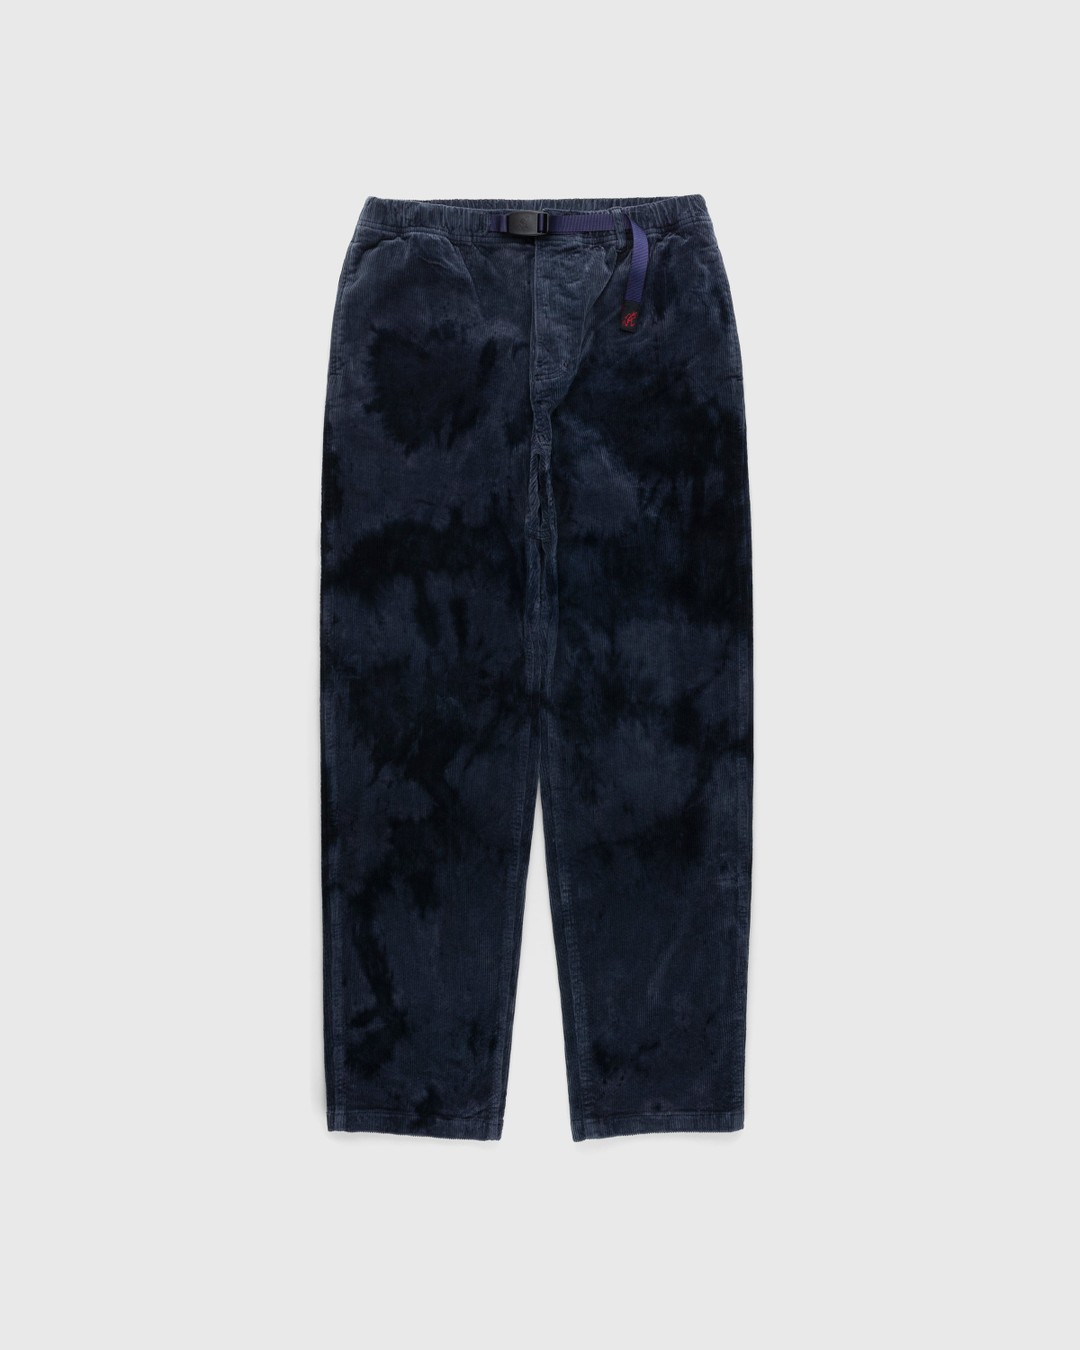 Gramicci – Corduroy Gramicci Pant Bleach Dye - Trousers - Multi - Image 1